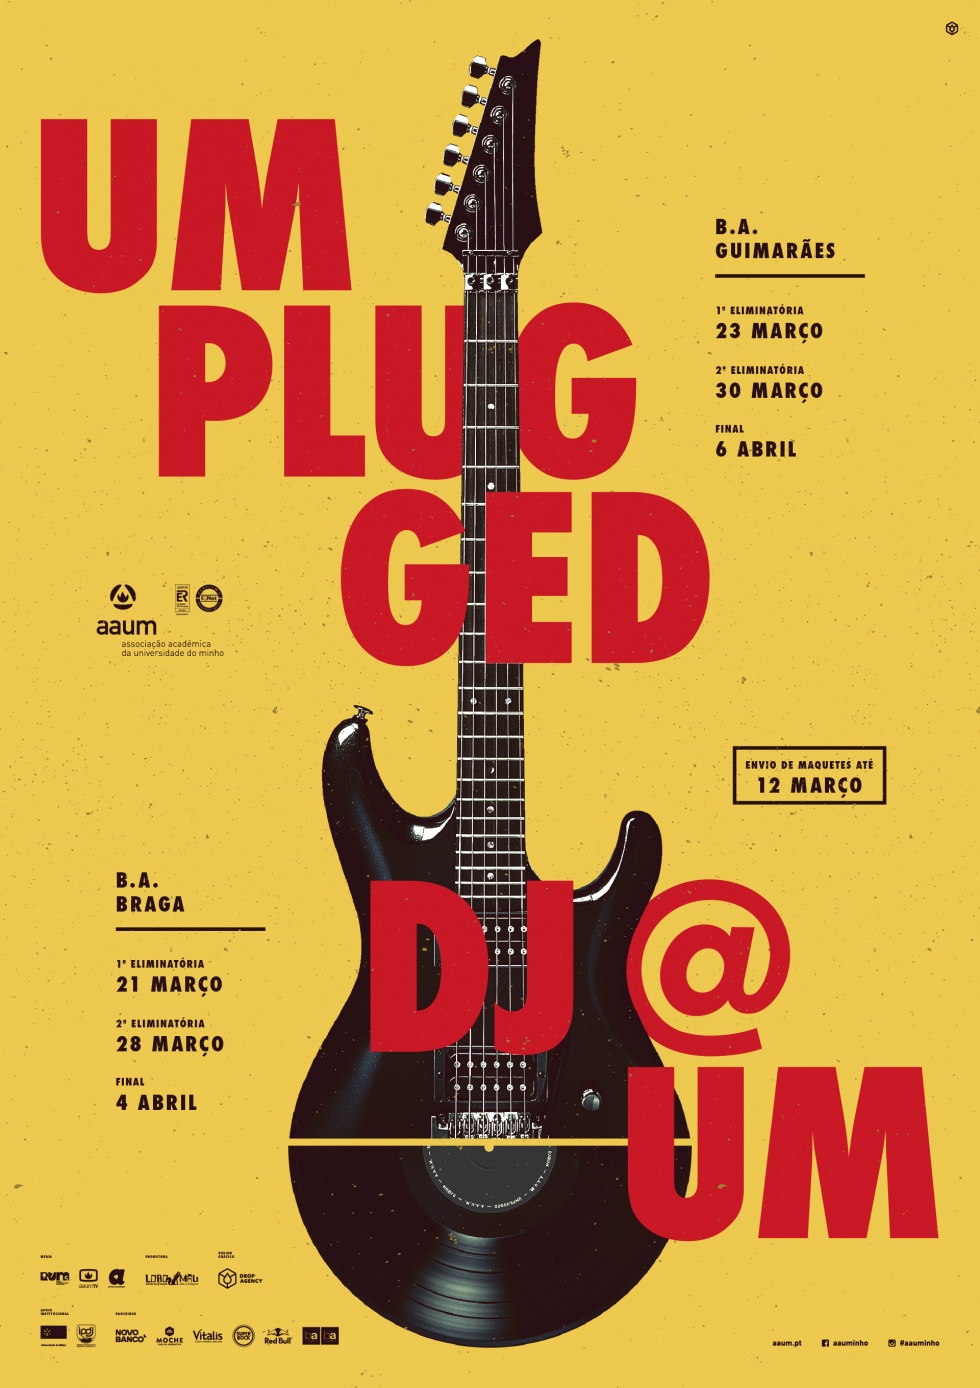 Concursos UMplugged e DJ@UM estão de volta!